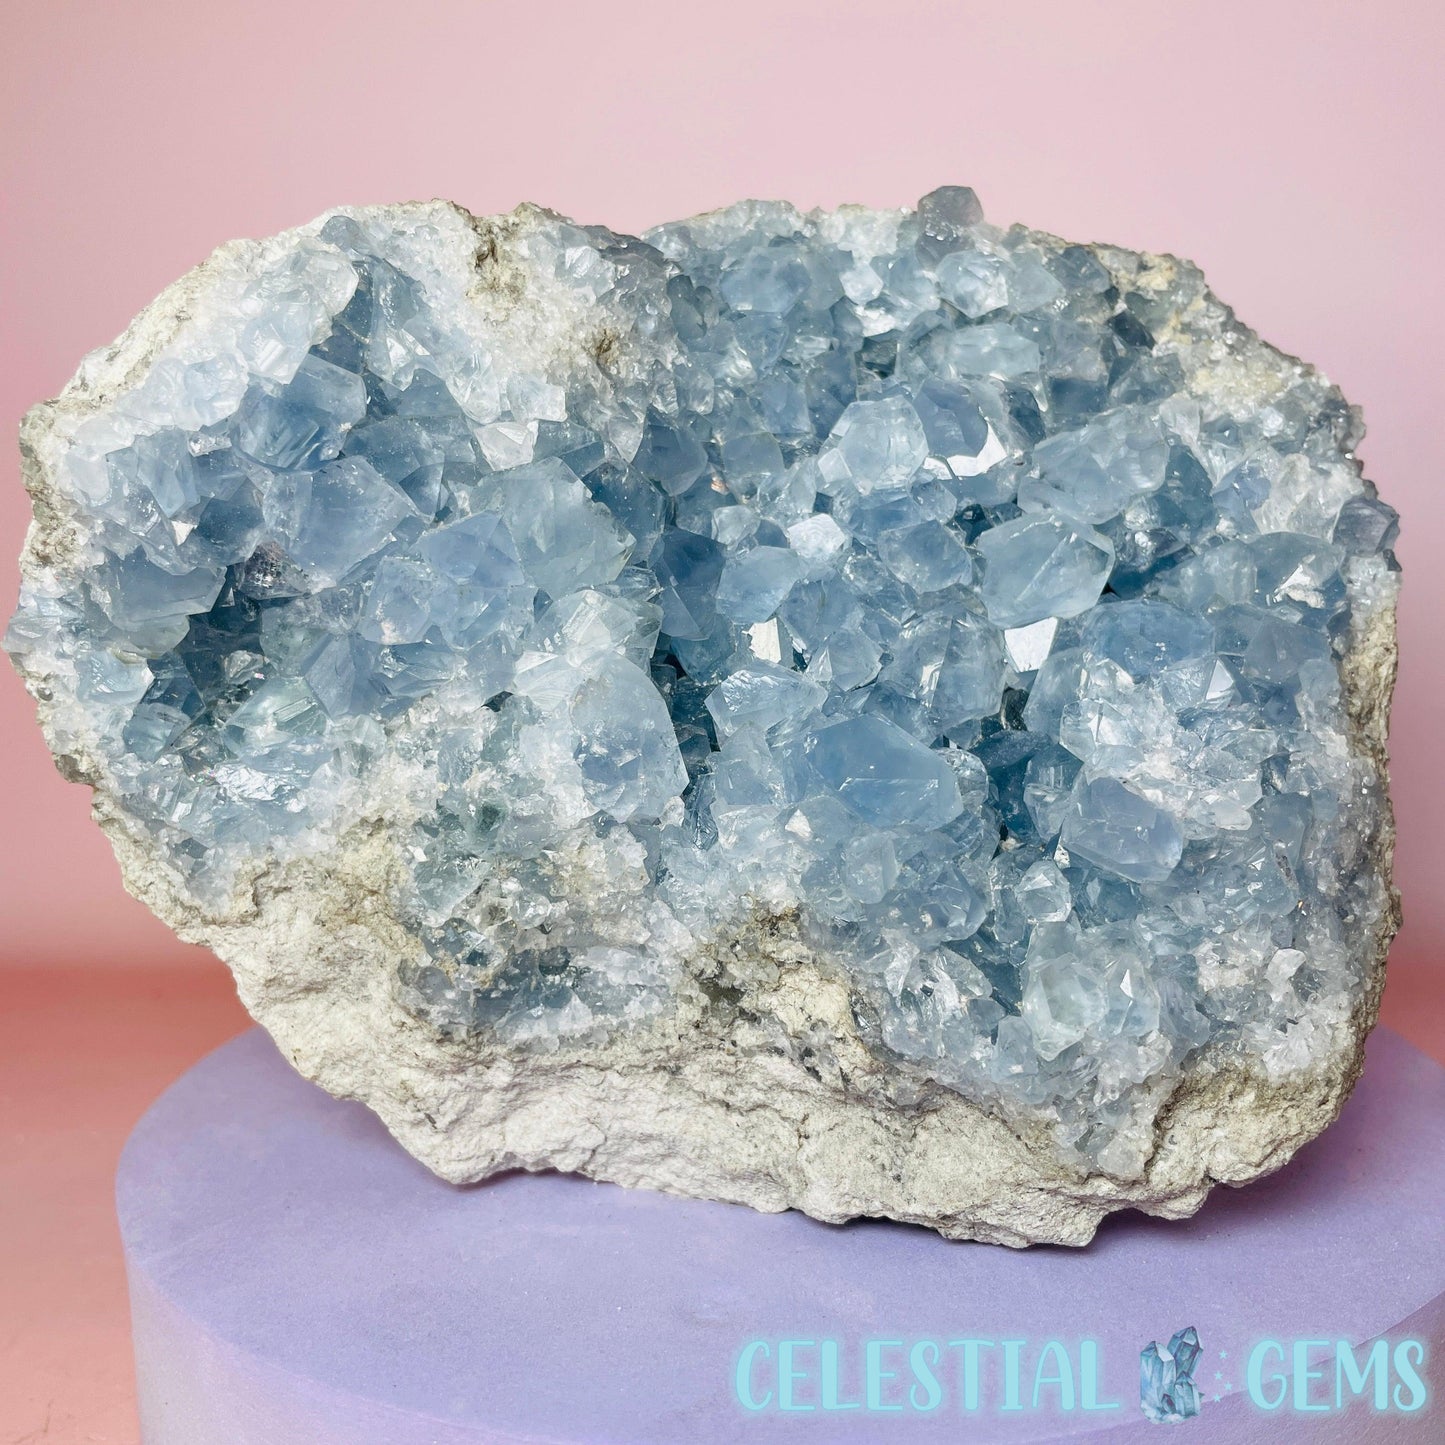 Celestite Large Geode Cluster